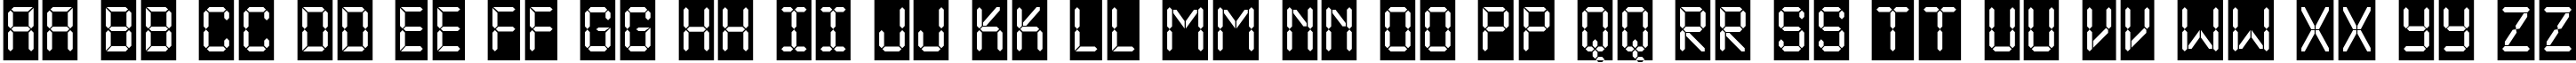 Пример написания английского алфавита шрифтом a_LCDNovaCm